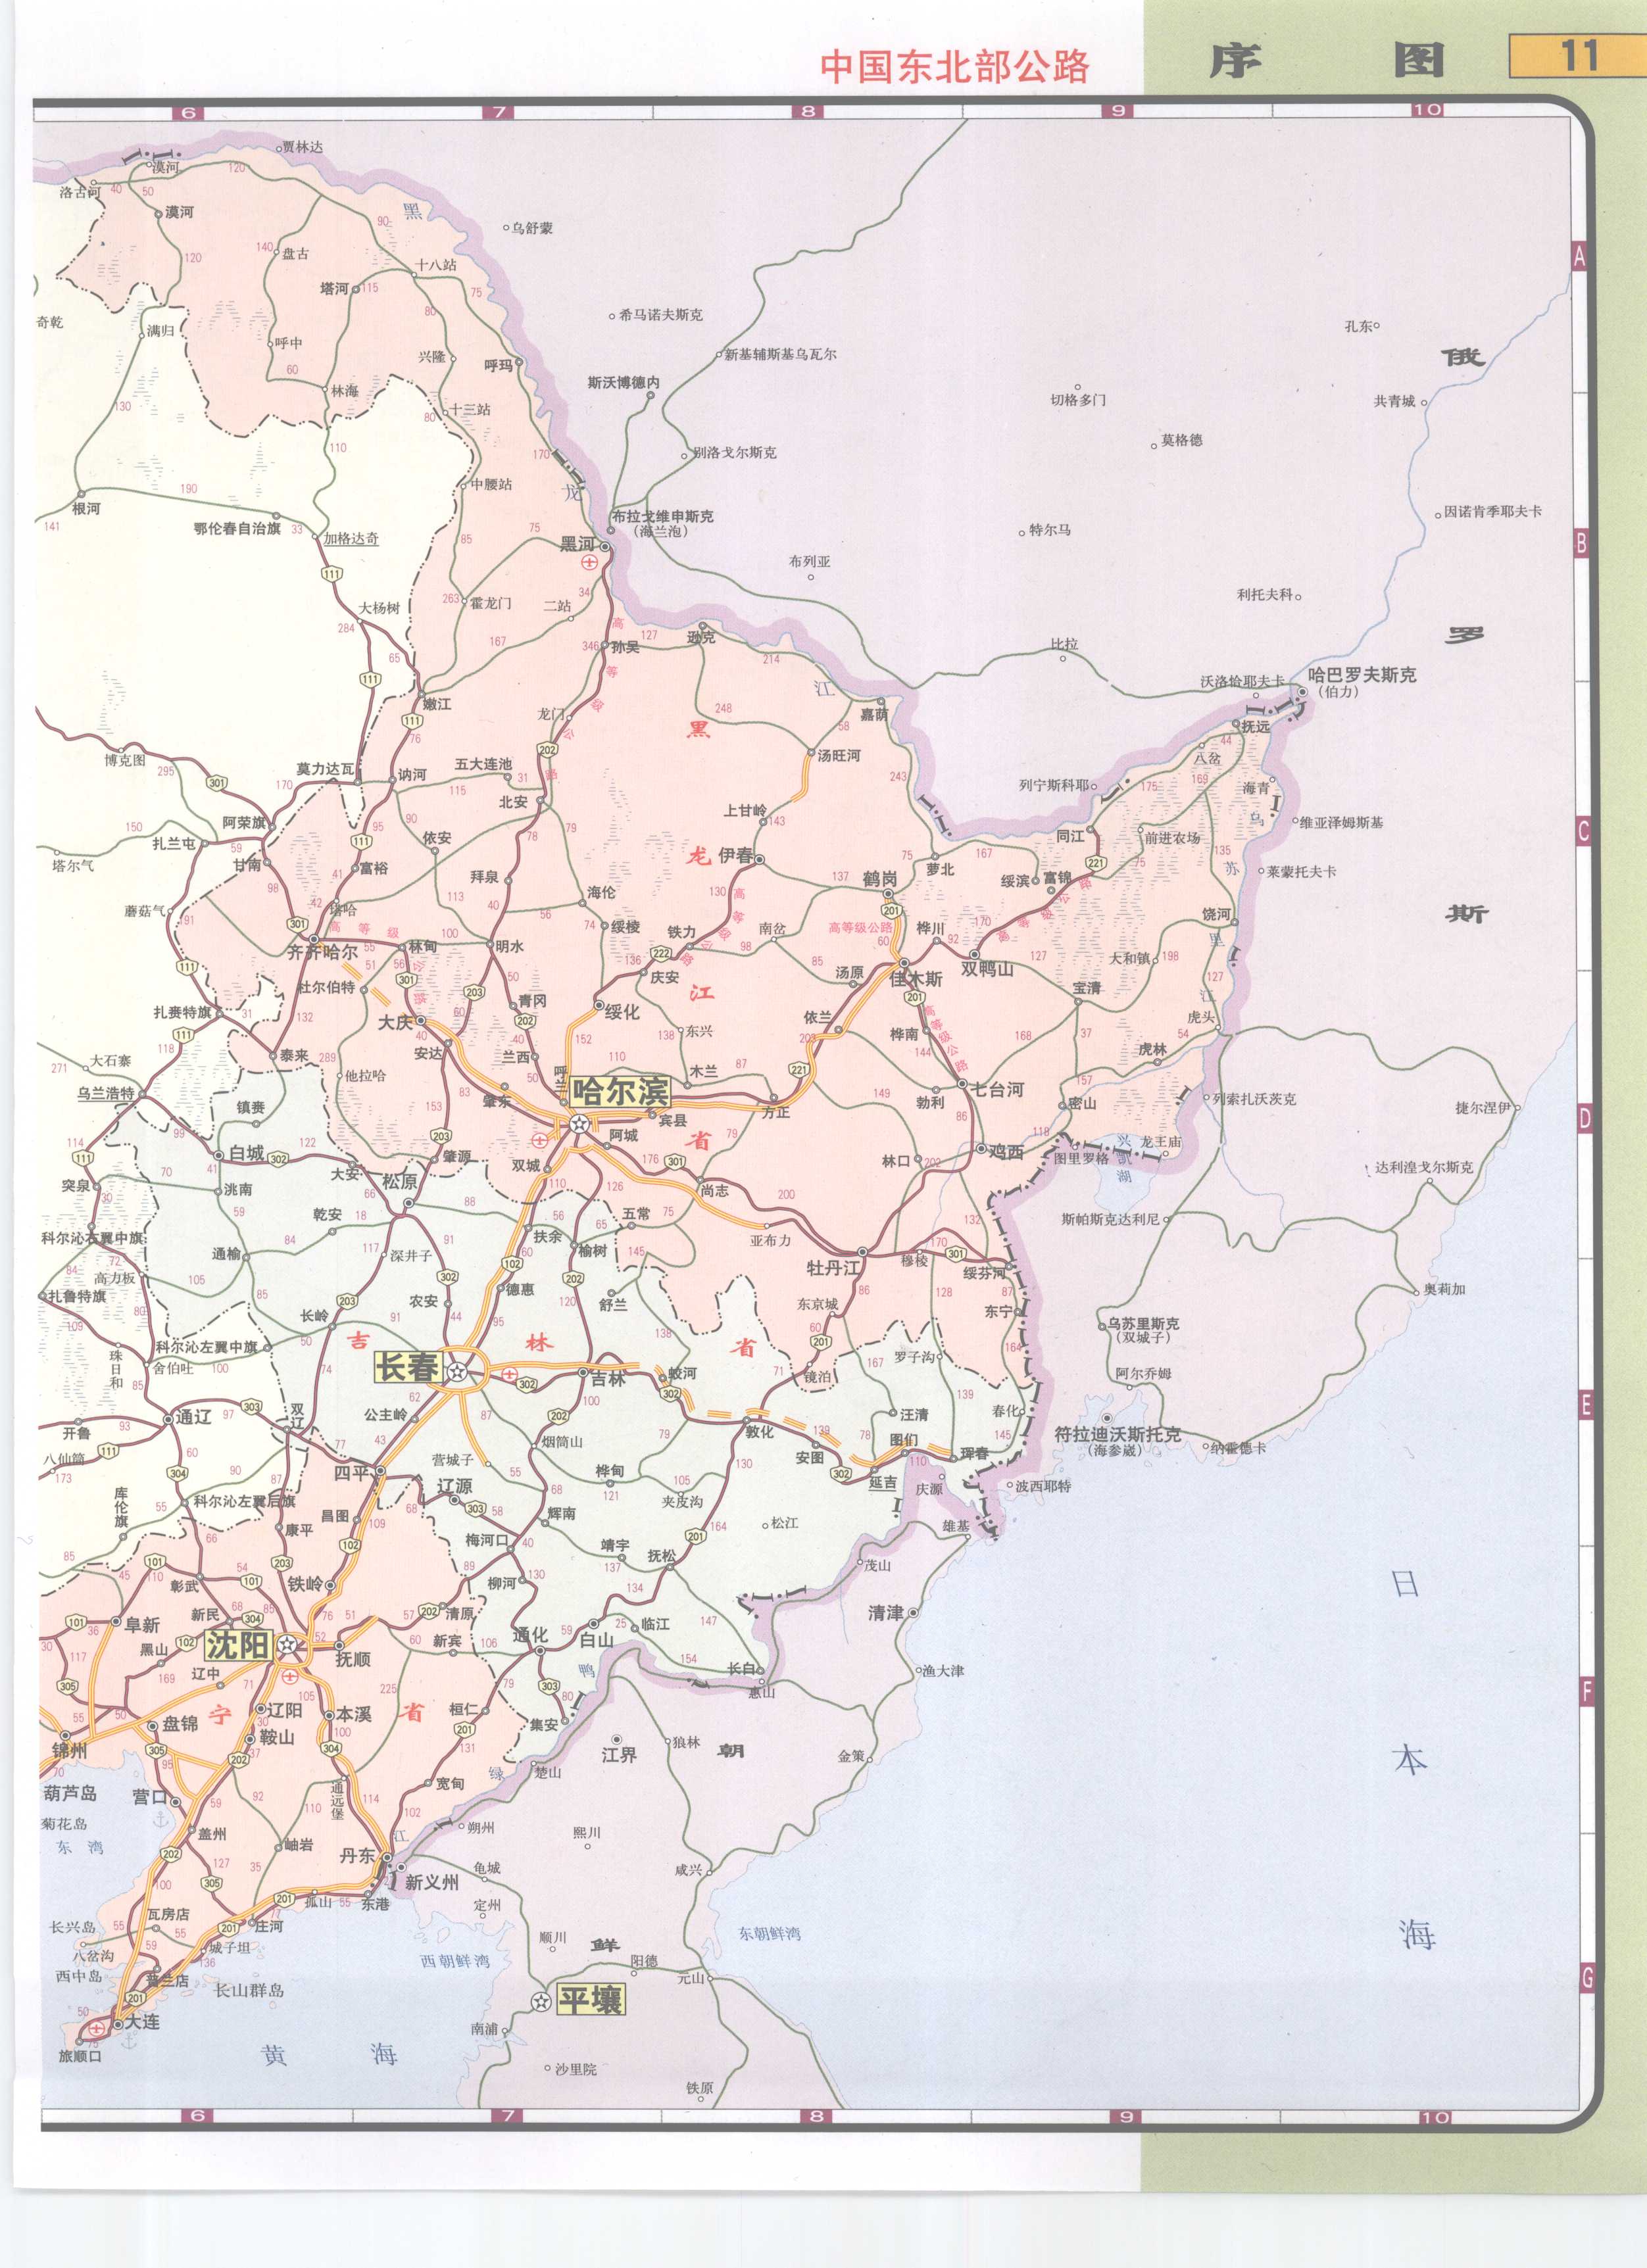 中国东北部高速公路网地图